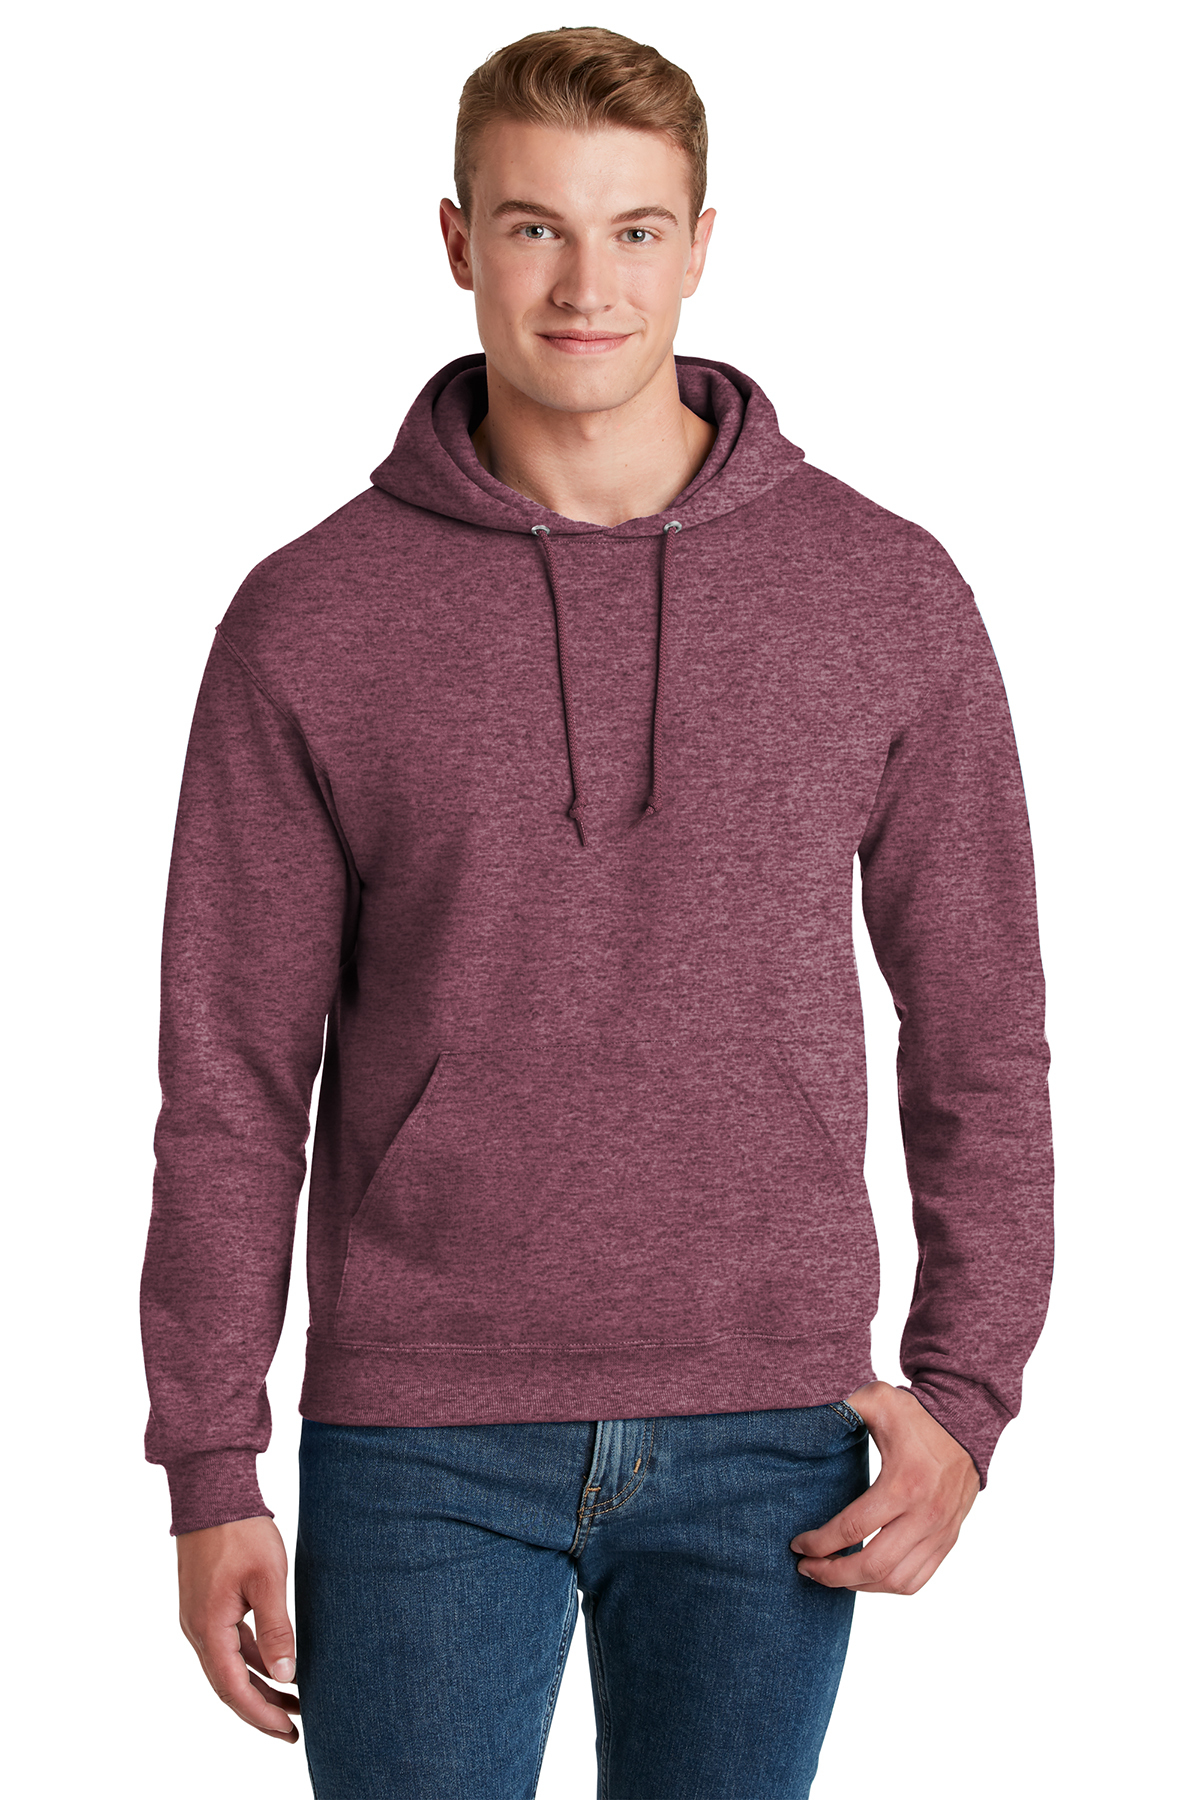 Custom Printed Mens Jerzees Hoody Sweatshirts